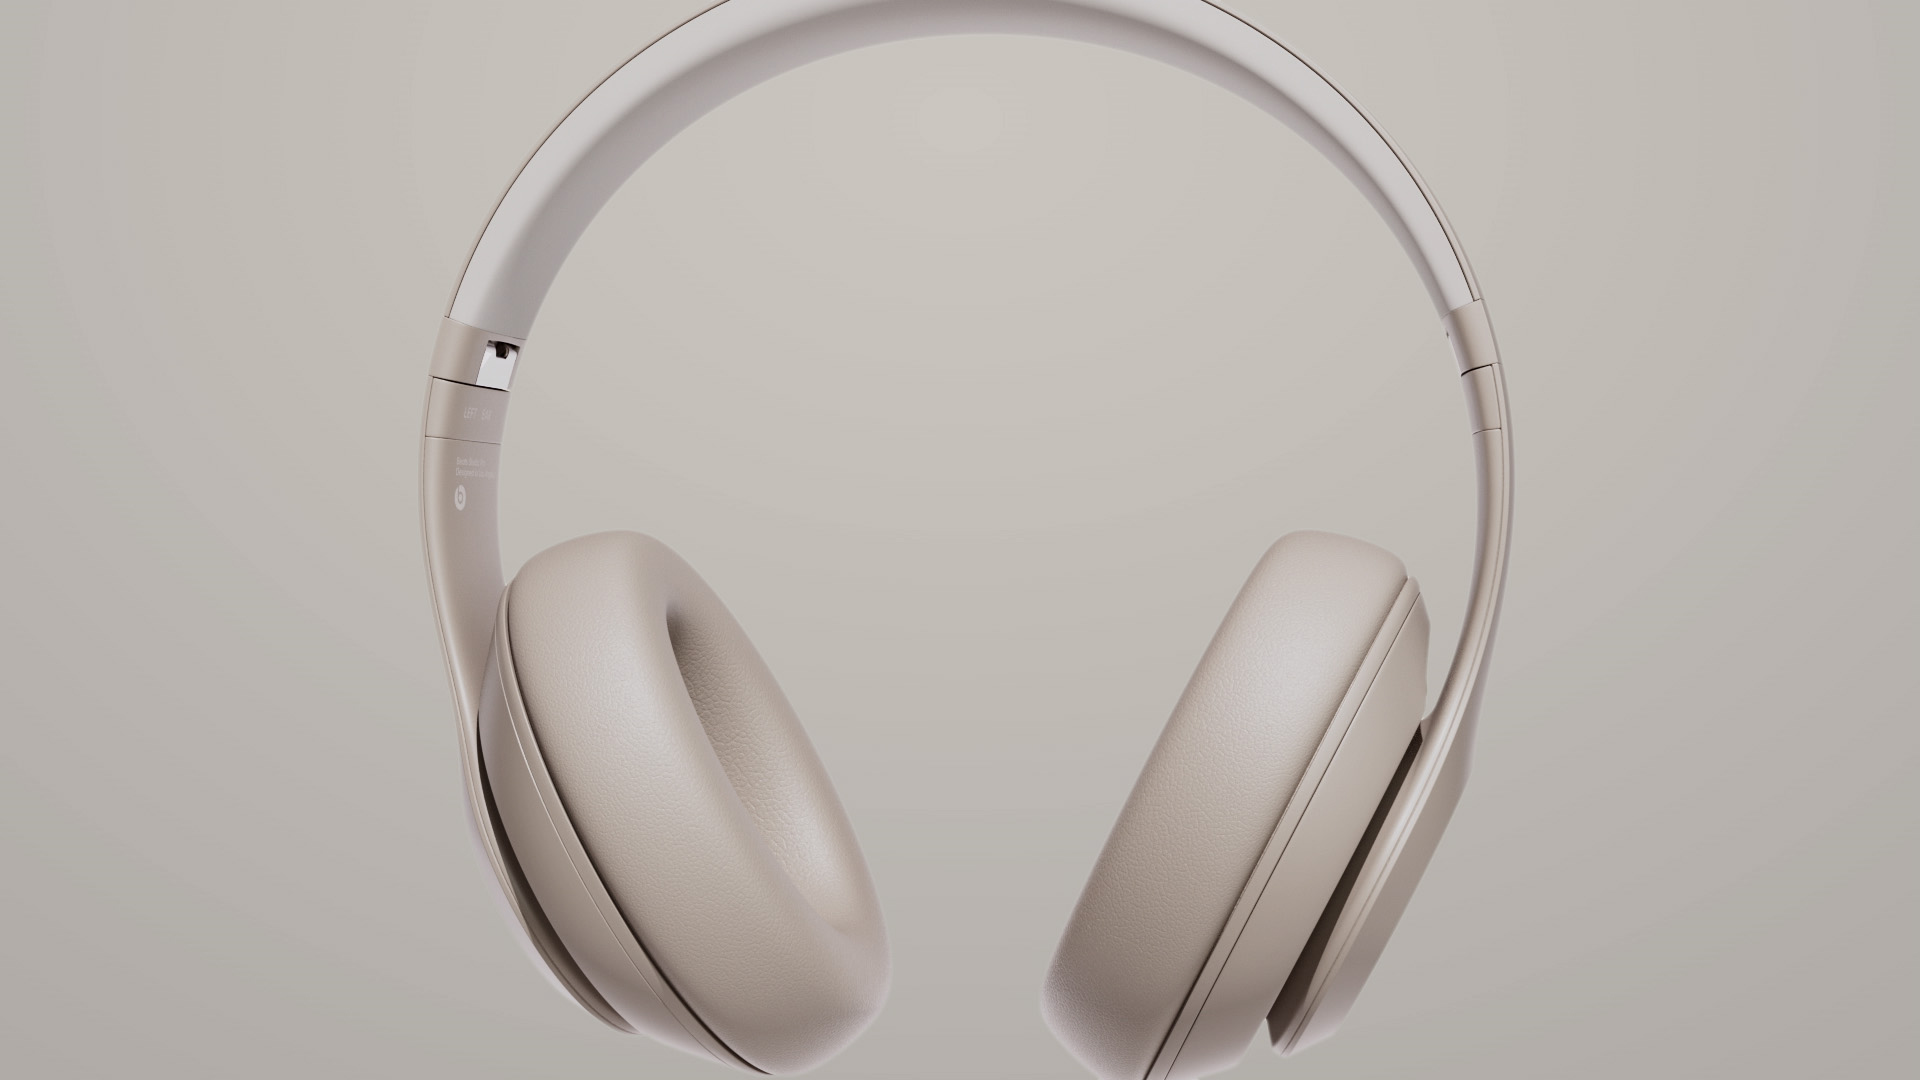 Beats Studio Pro – Premium Wireless Noise Cancelling Headphones